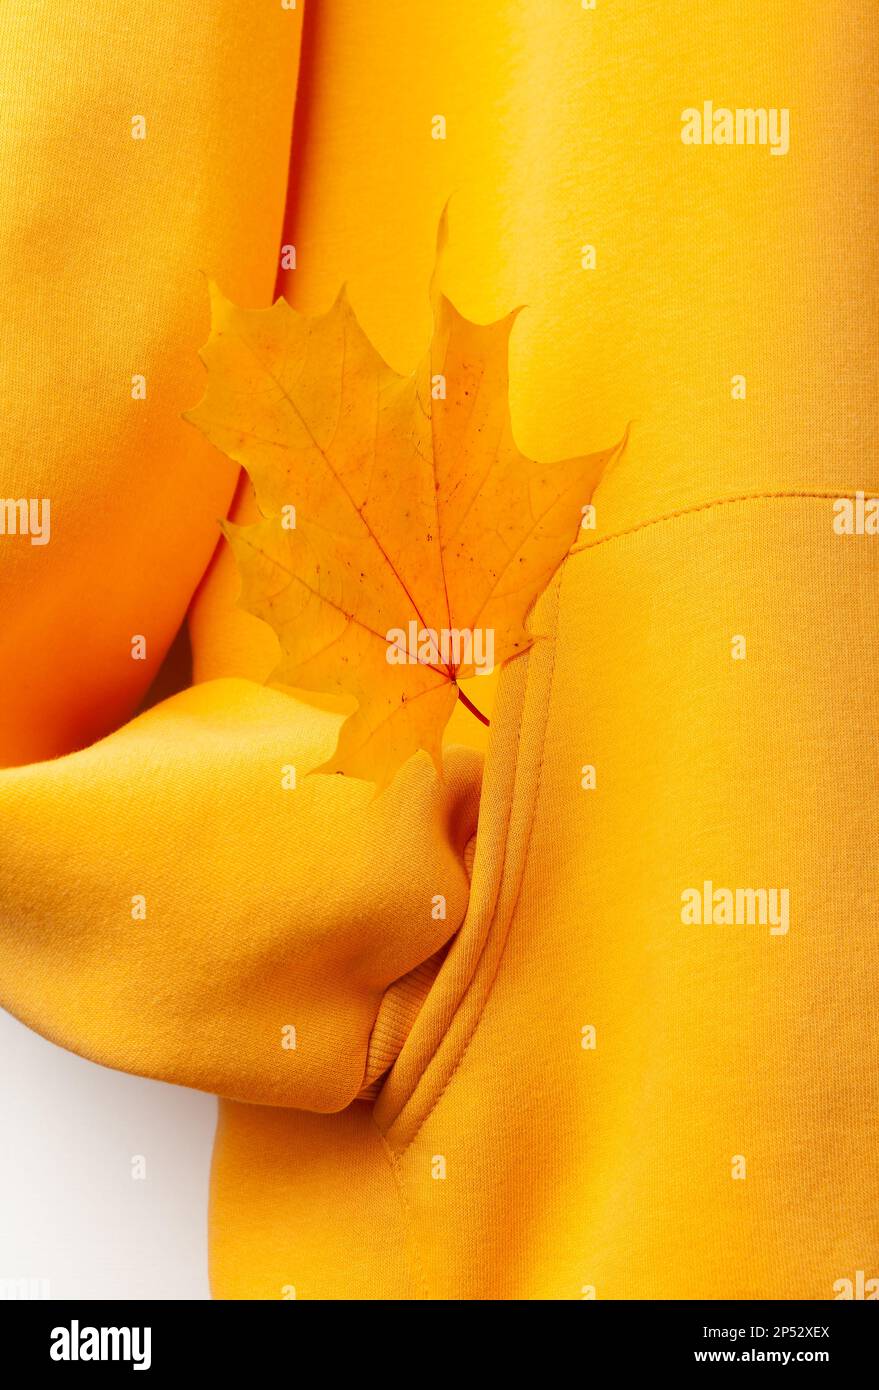 Concept d'automne - fragment d'un sweat à capuche jaune avec une manche repliée dans une poche, une feuille d'érable jaune dépassant d'une poche. Banque D'Images